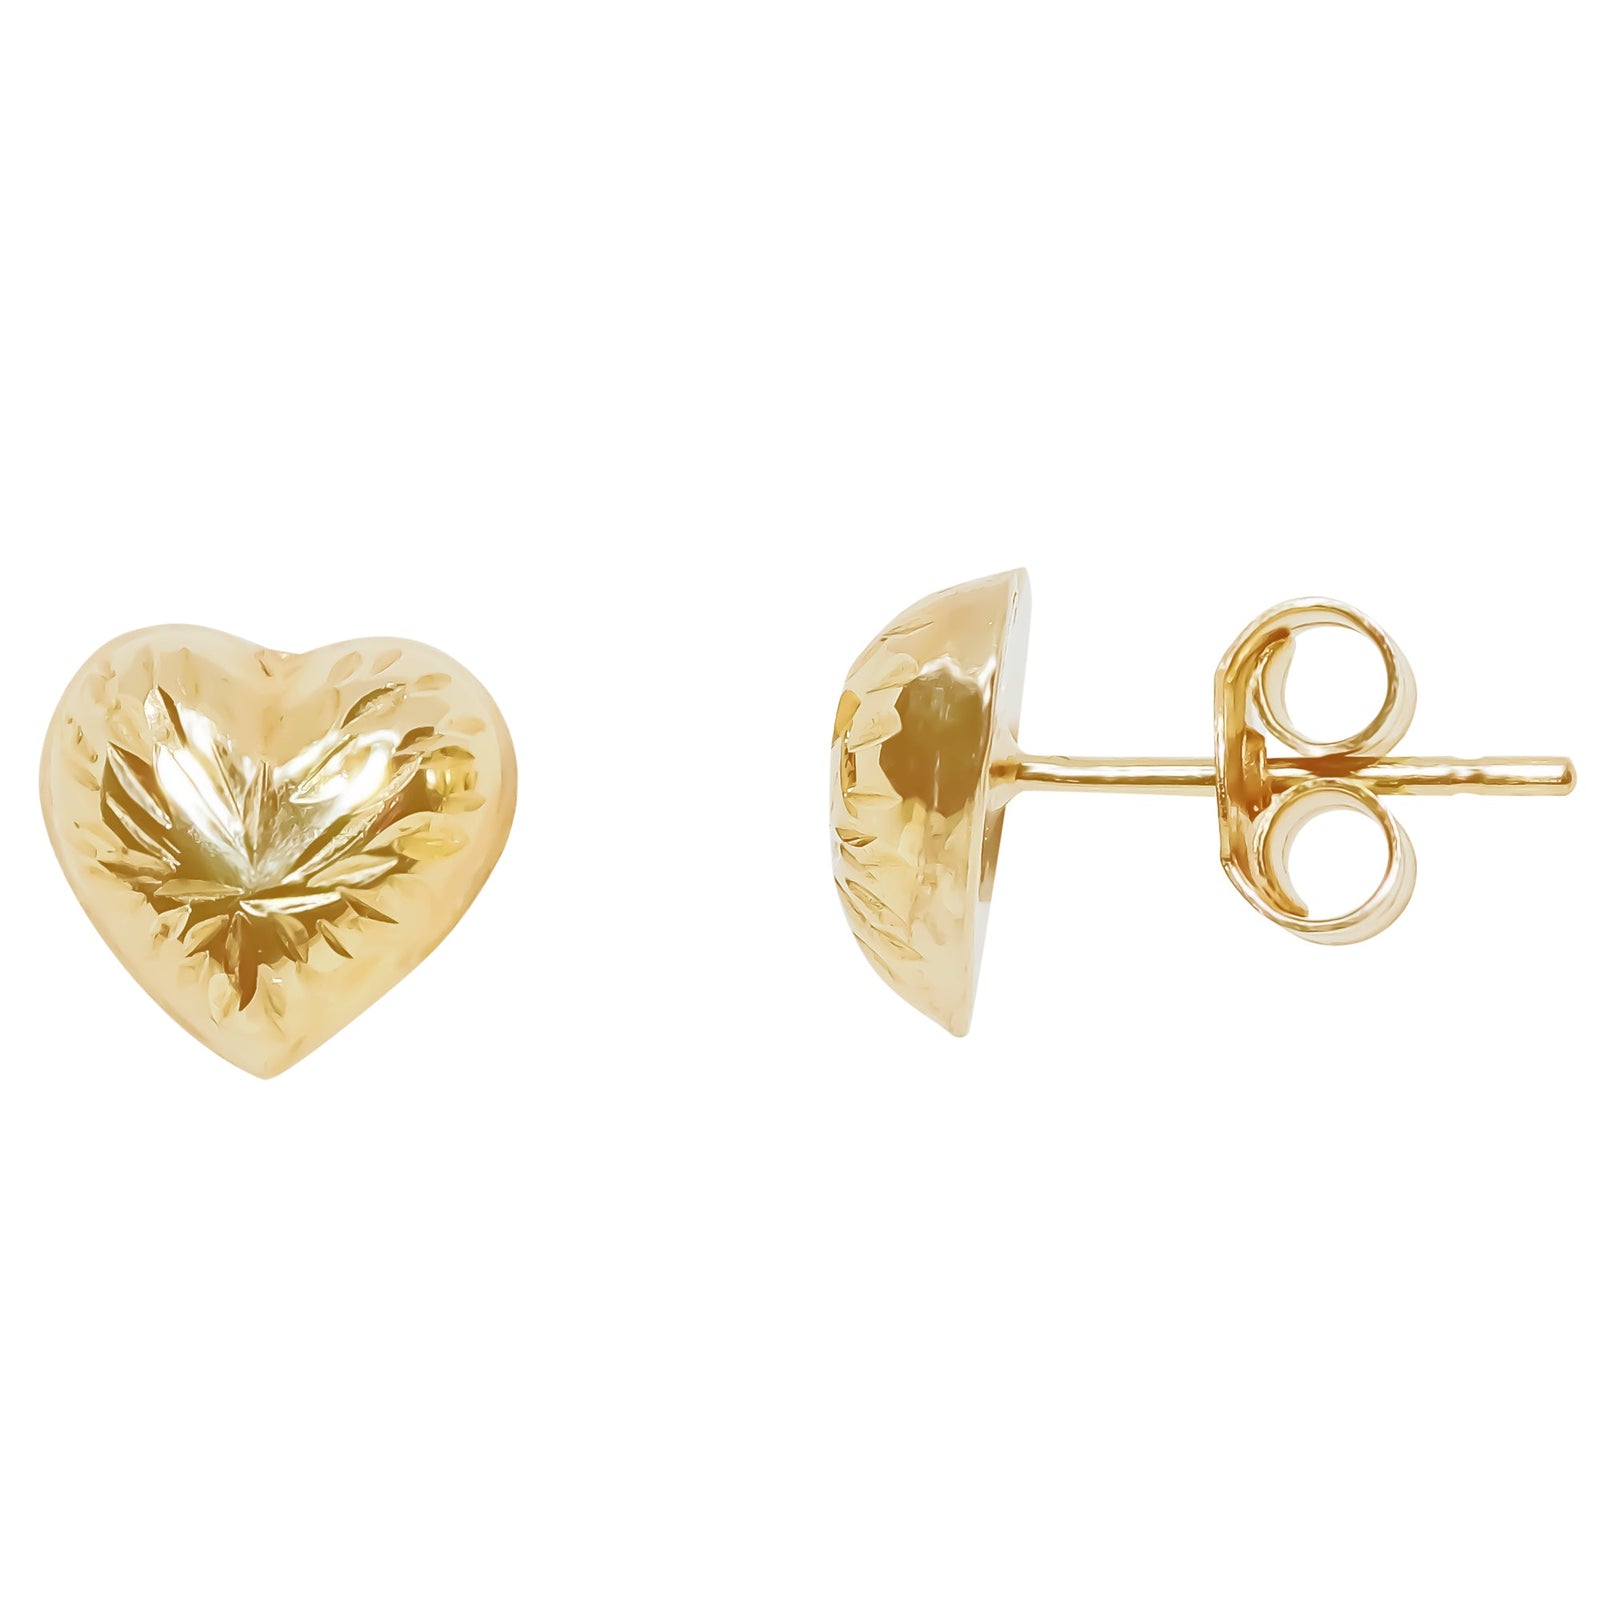 9ct gold 8mm diamond cut heart shape stud earrings